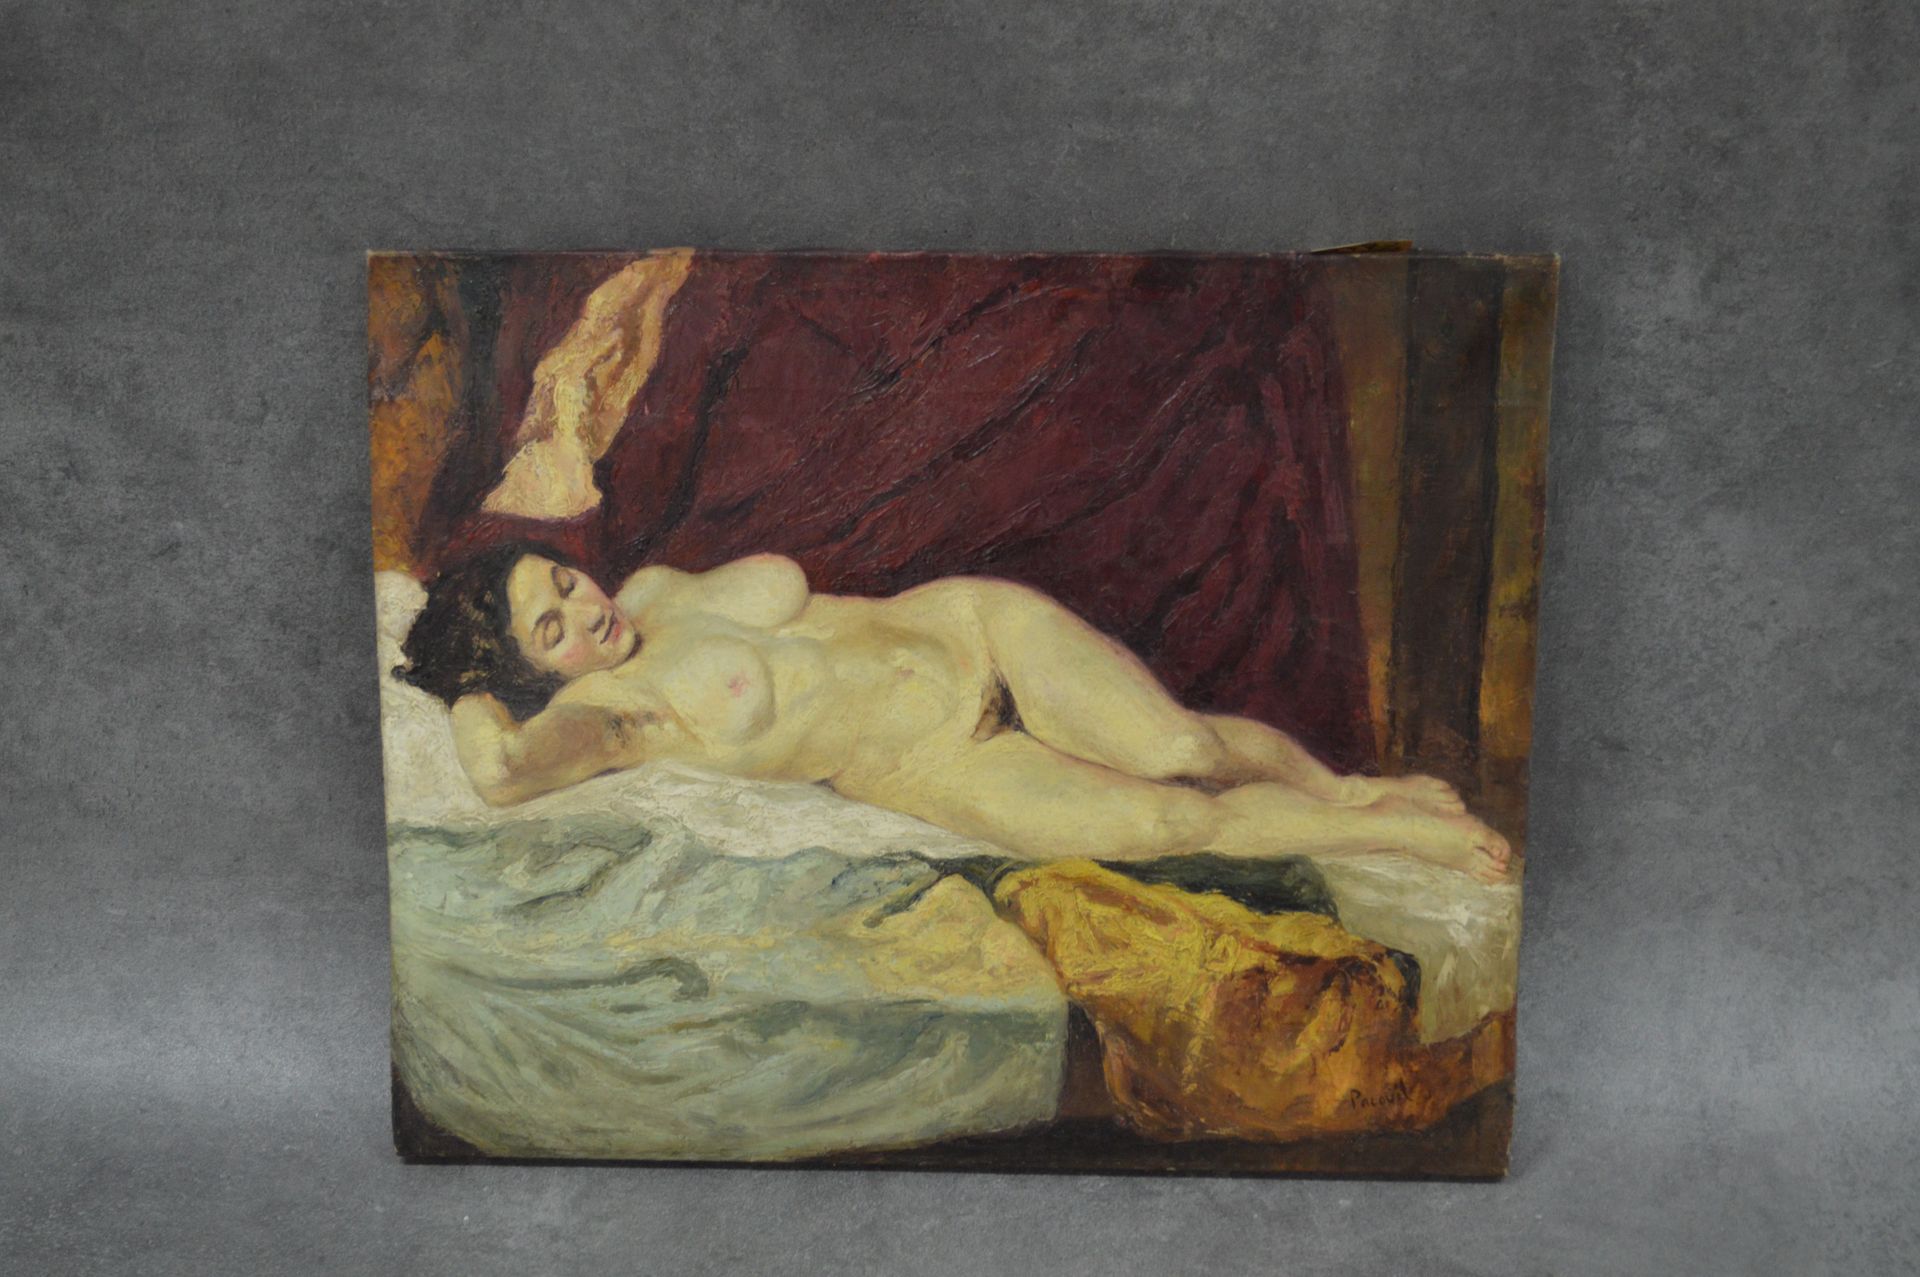 PACOUIL 
布面油画。签名：
PACOUIL。躺着的裸体女人。不保证签名。尺寸：71 x 58厘米。